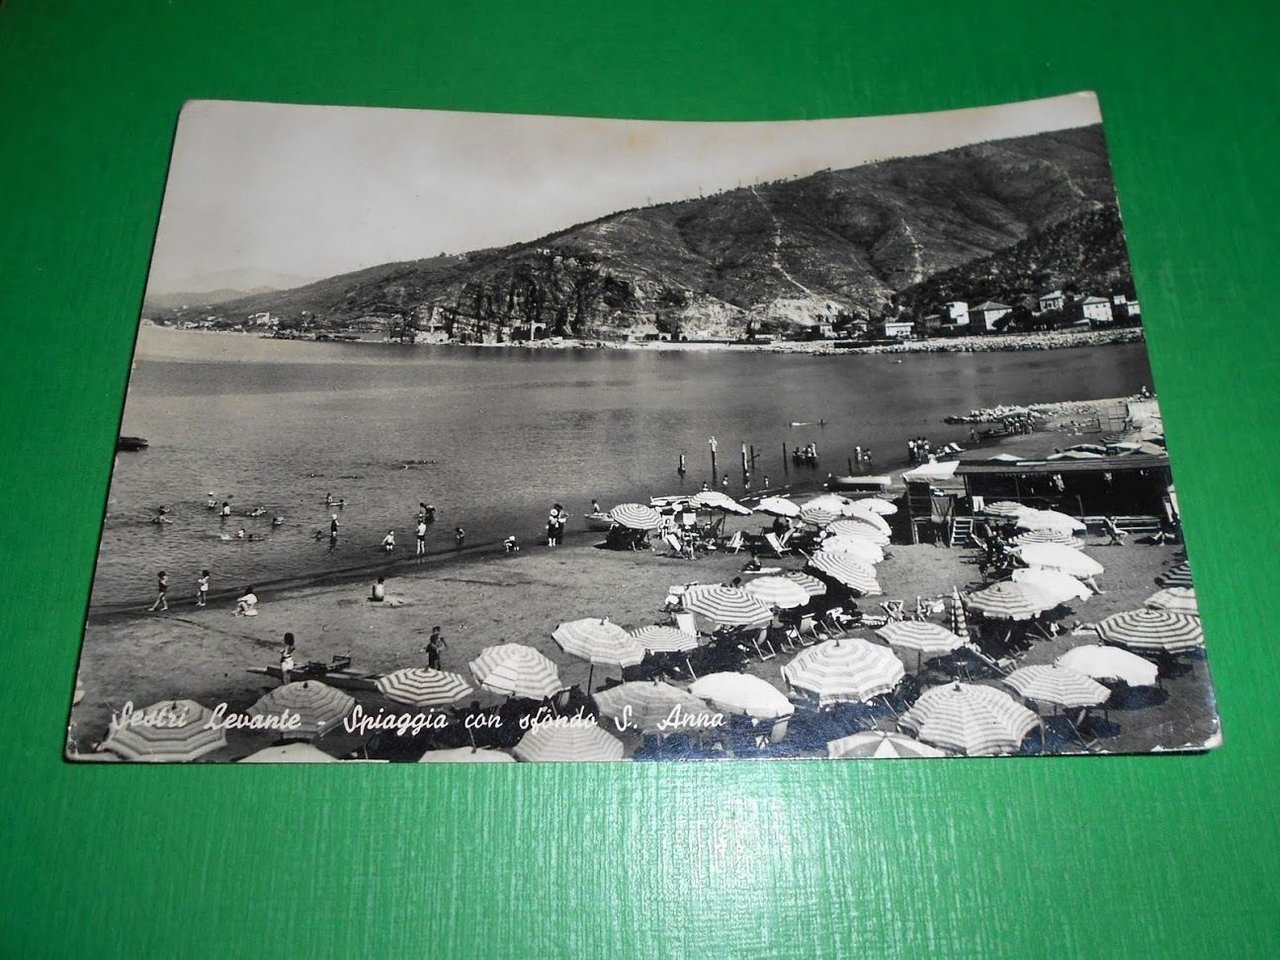 Cartolina Sestri Levante - Spiaggia con sfondo S. Anna 1951.